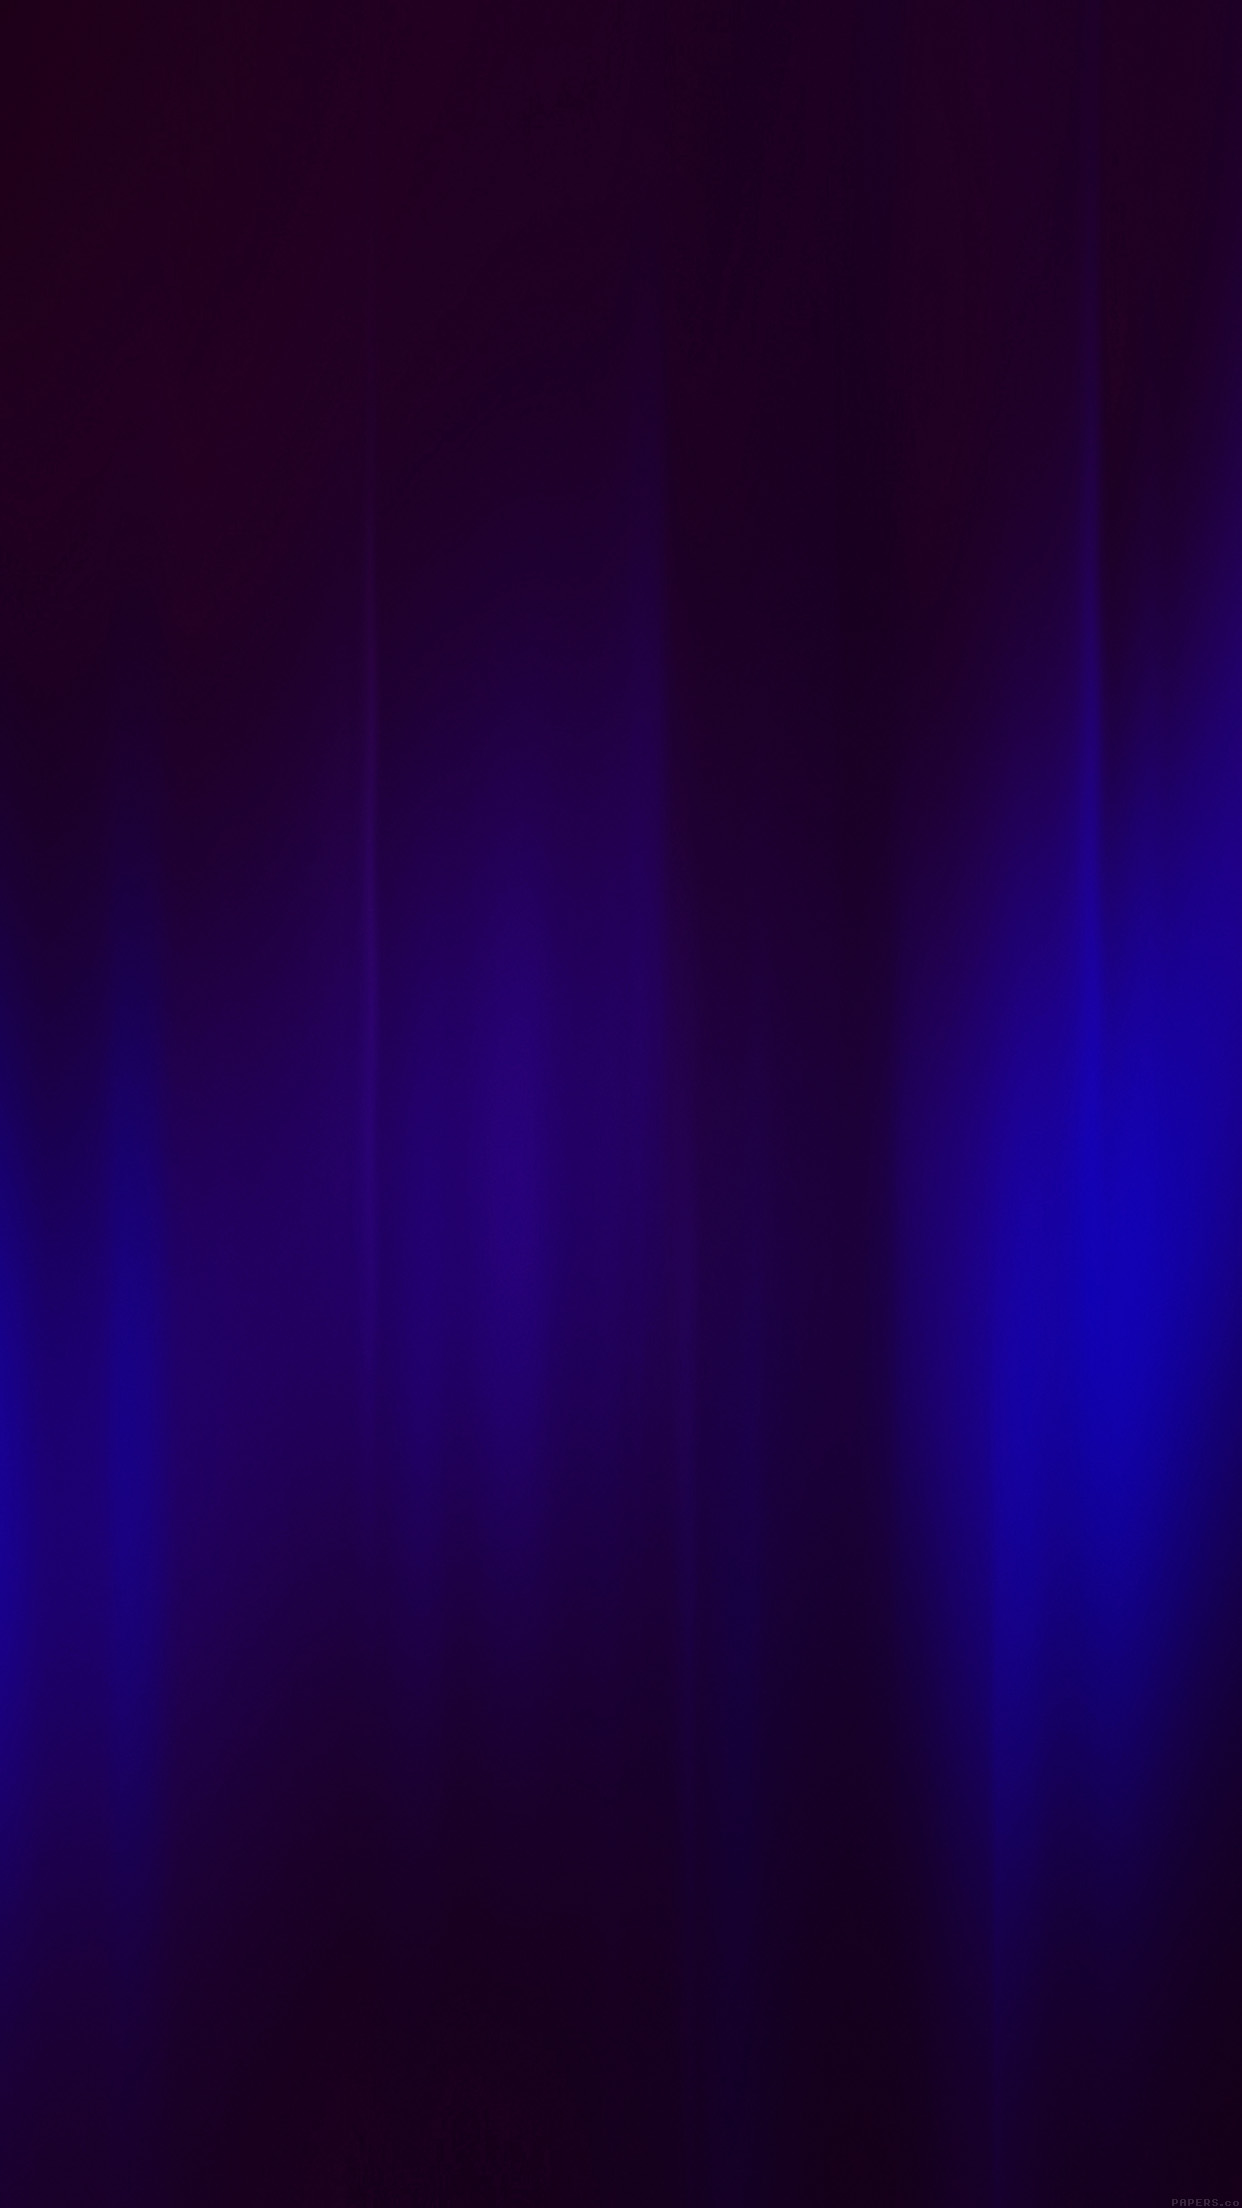 dunkelblaue mustertapete,blau,violett,lila,schwarz,elektrisches blau